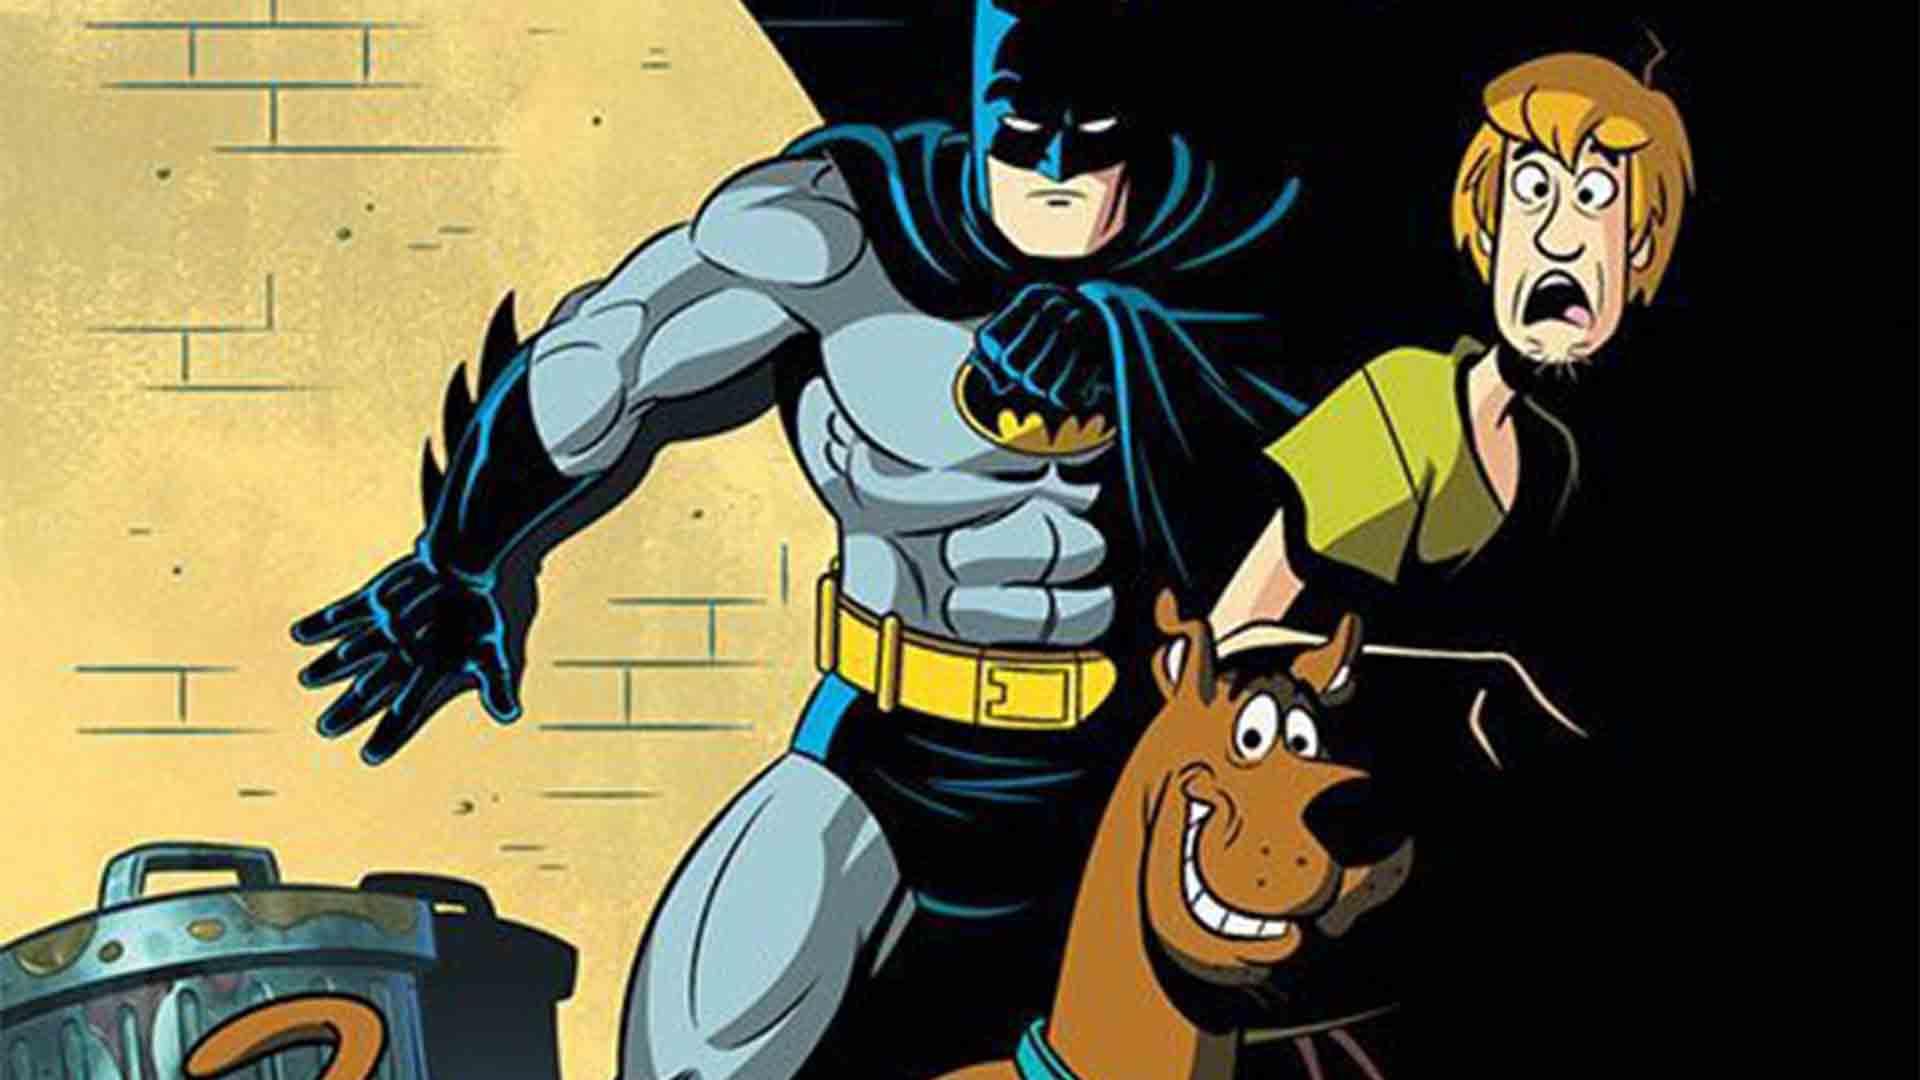 دی سی سری کتاب کمیک Batman & Scooby Doo Mysteries را معرفی کرد